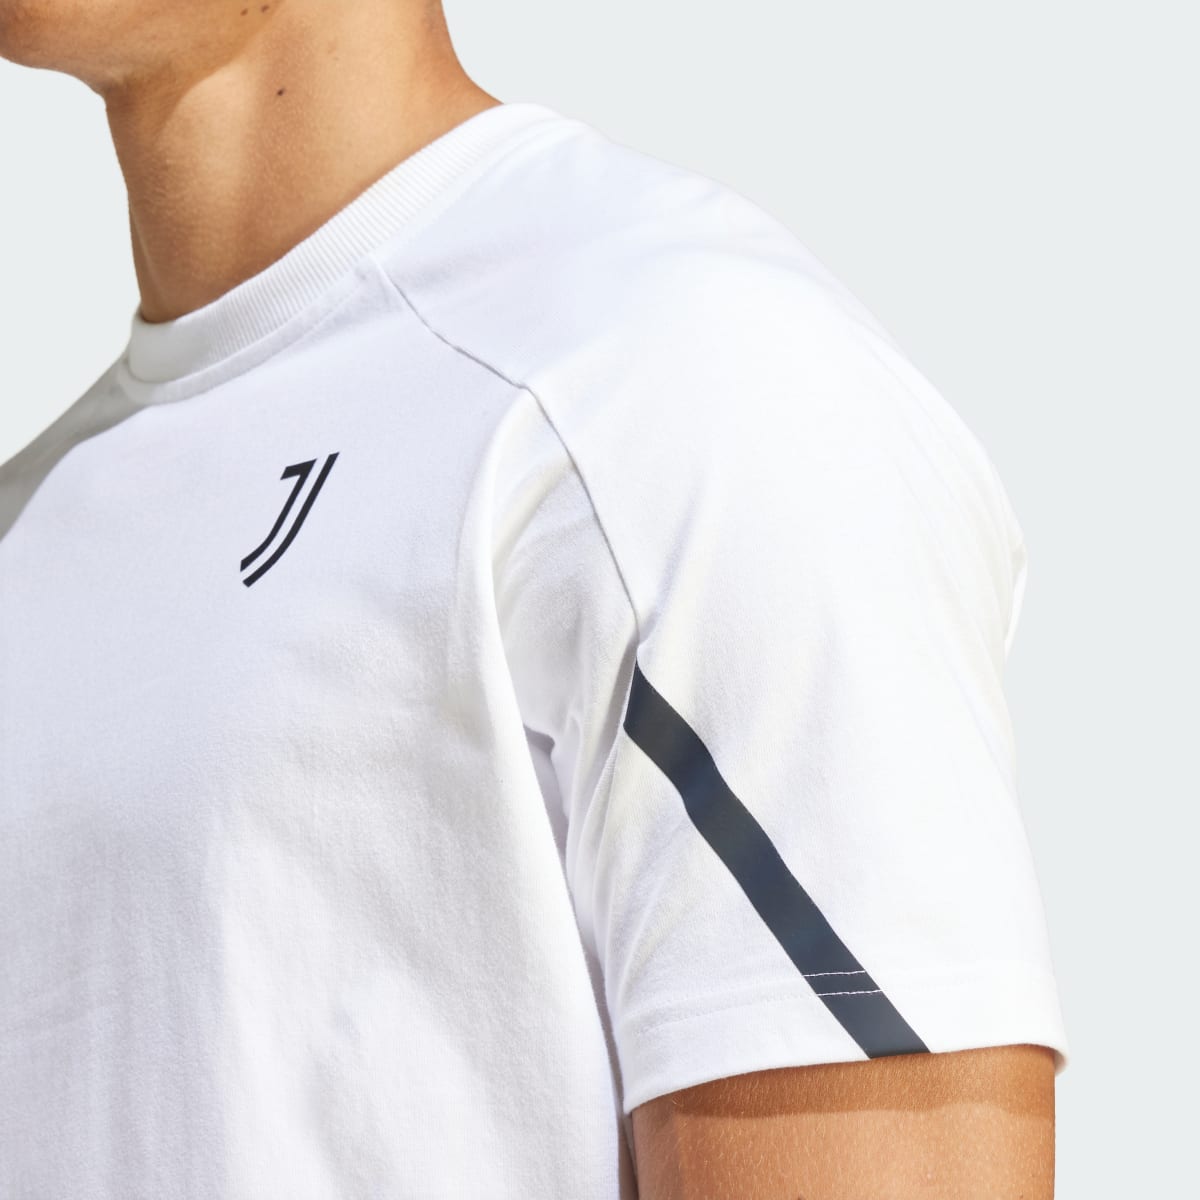 Adidas T-shirt Juventus Designed for Gameday. 7